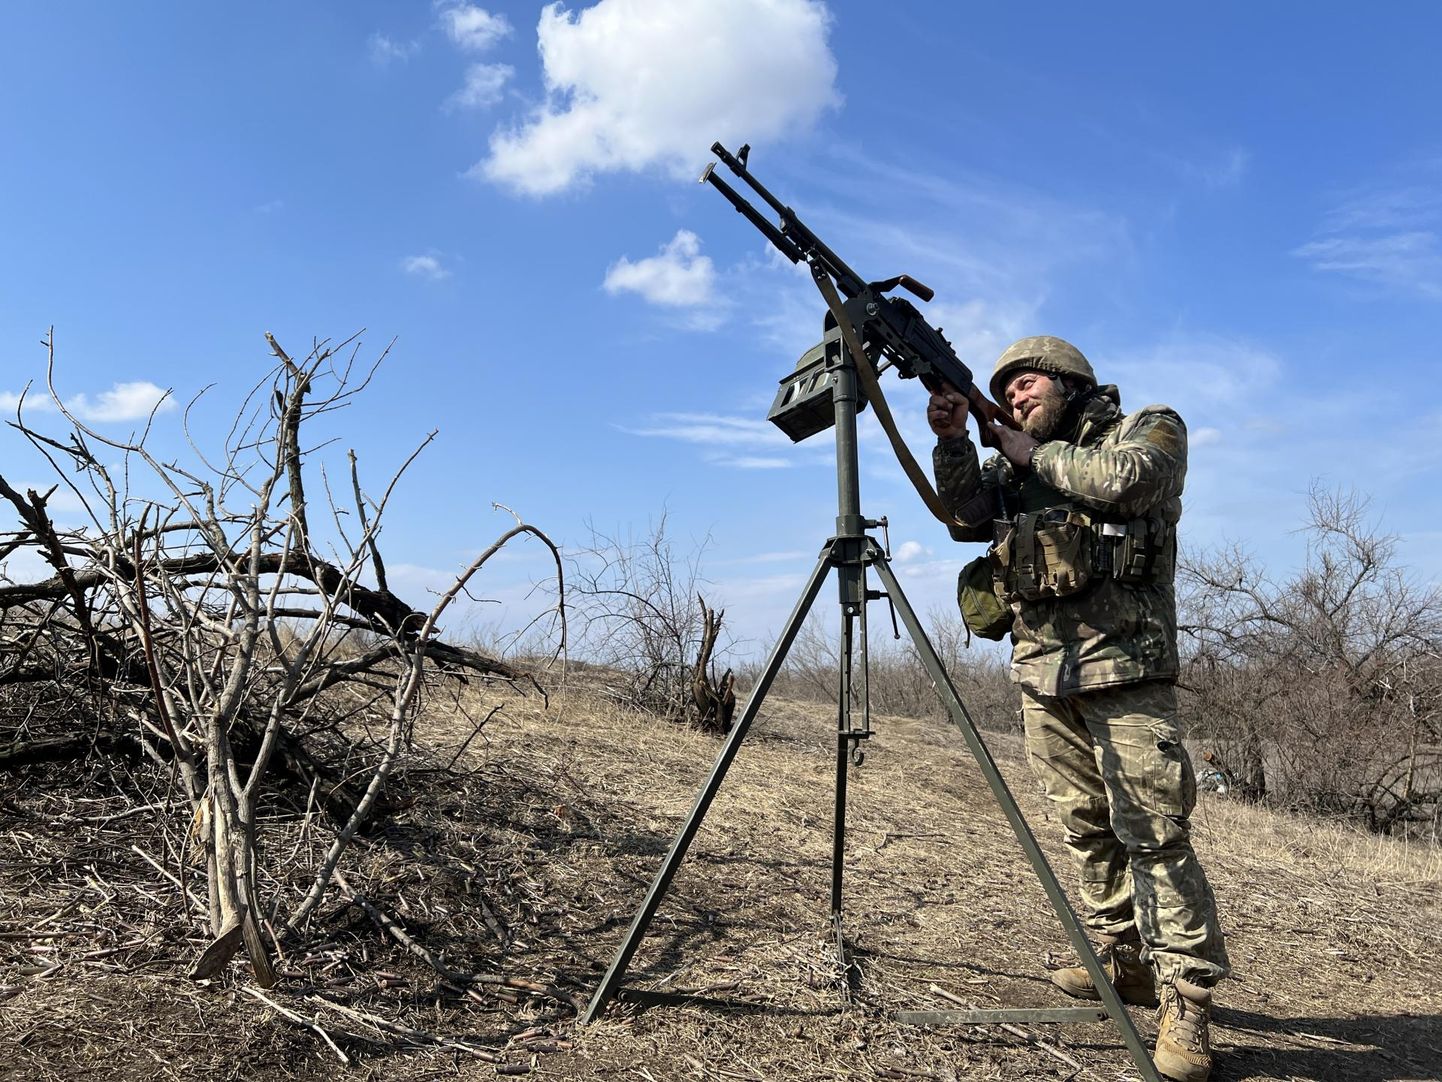 Юрий (35 лет), солдат подразделения ПВО 80-й десантной-штурмовой бригады Вооруженных сил Украины, ищет в небе российские дроны с пулеметом. Фотография сделана в Бахмута возле города Часов Яр.